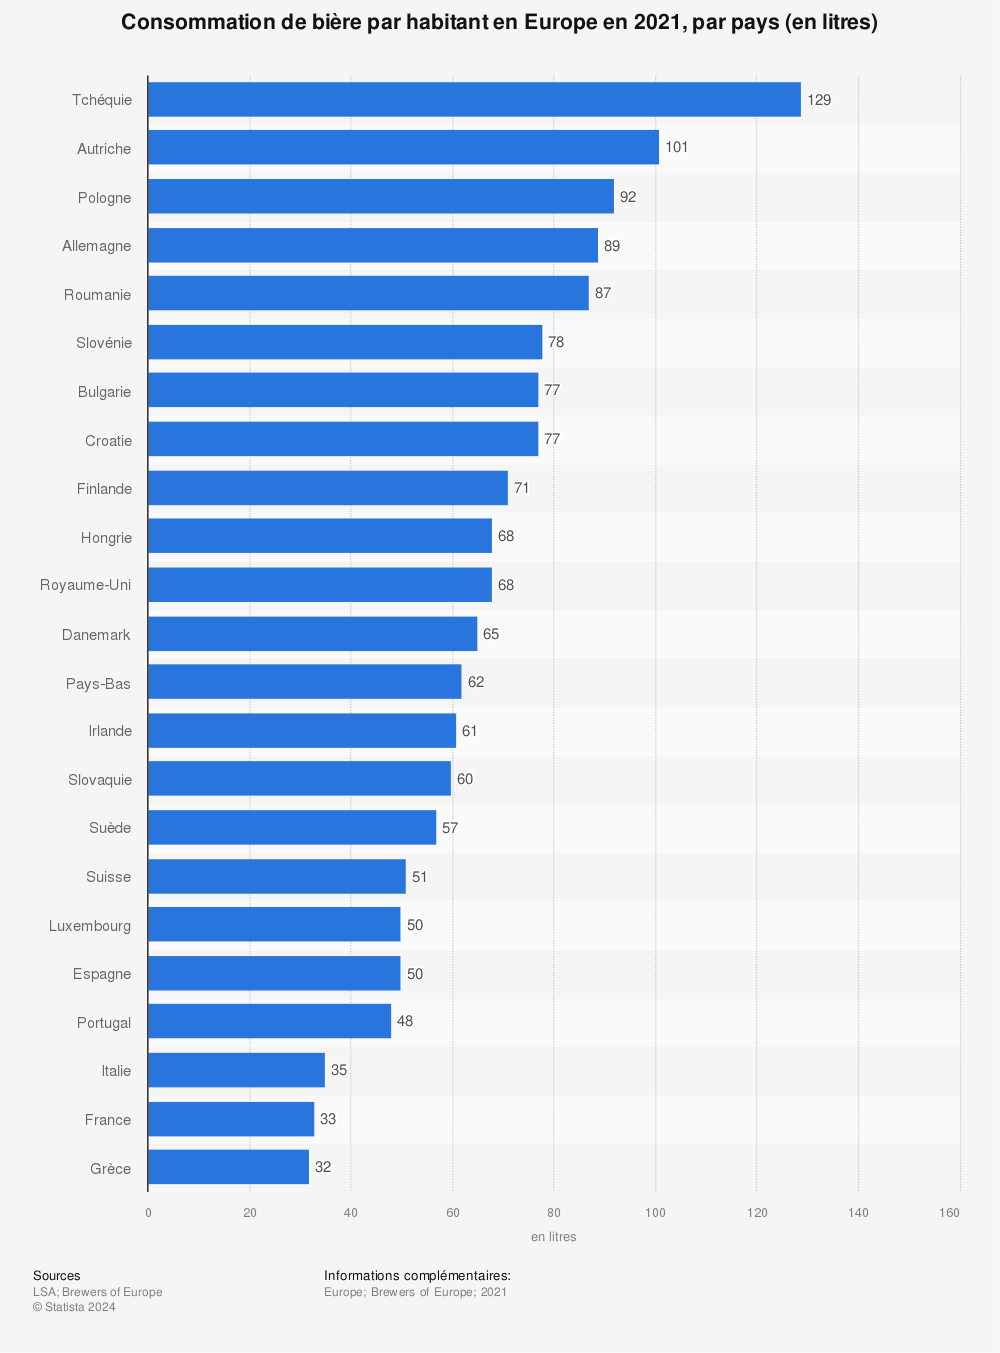 Statistique: Consommation de bière par habitant dans le monde en 2020, par principaux pays (en litres) | Statista